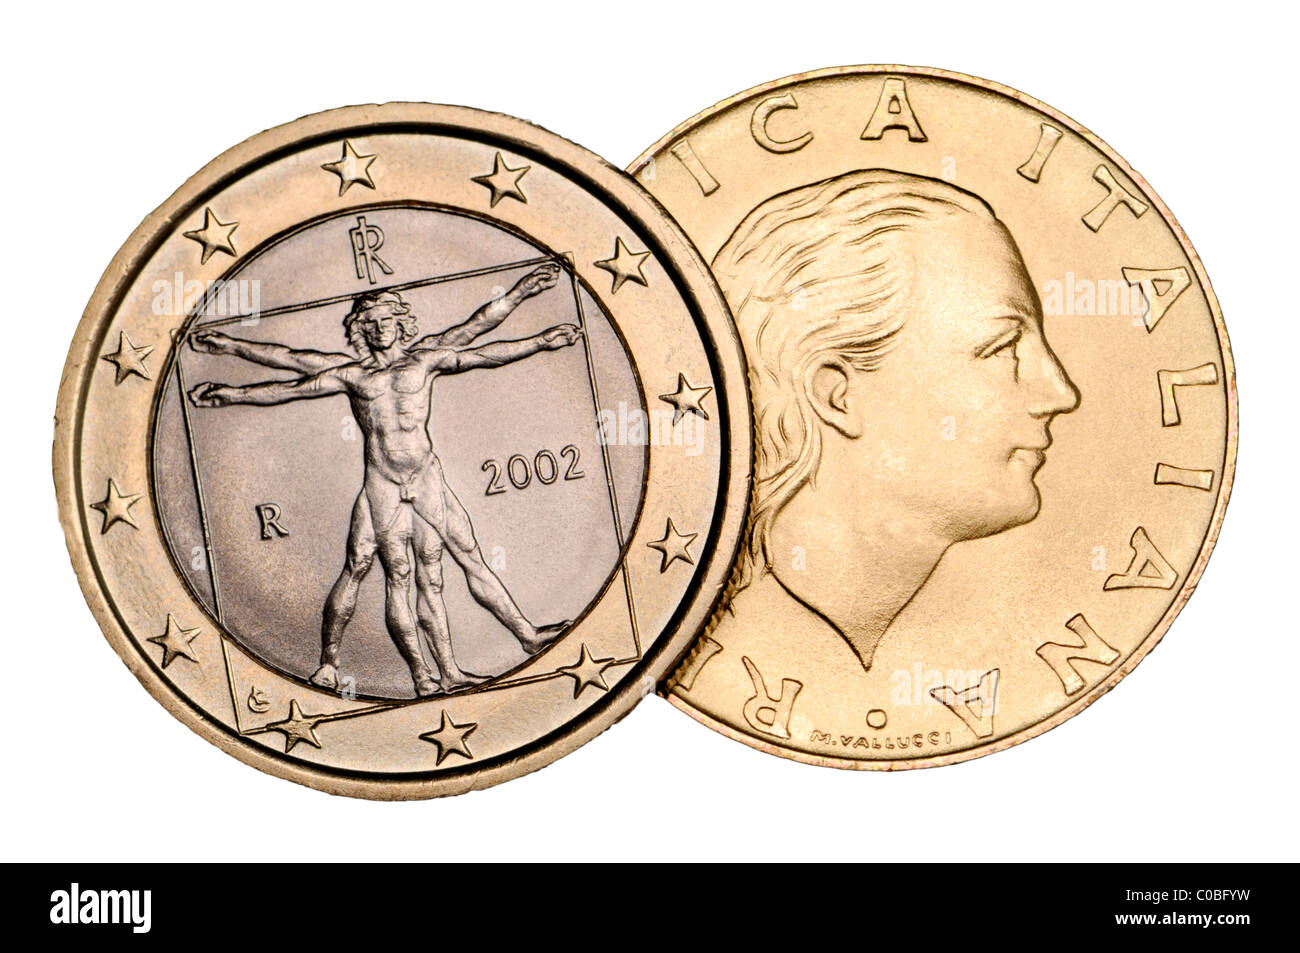 ITALY 1 Euro - 2007 Coin & Value 